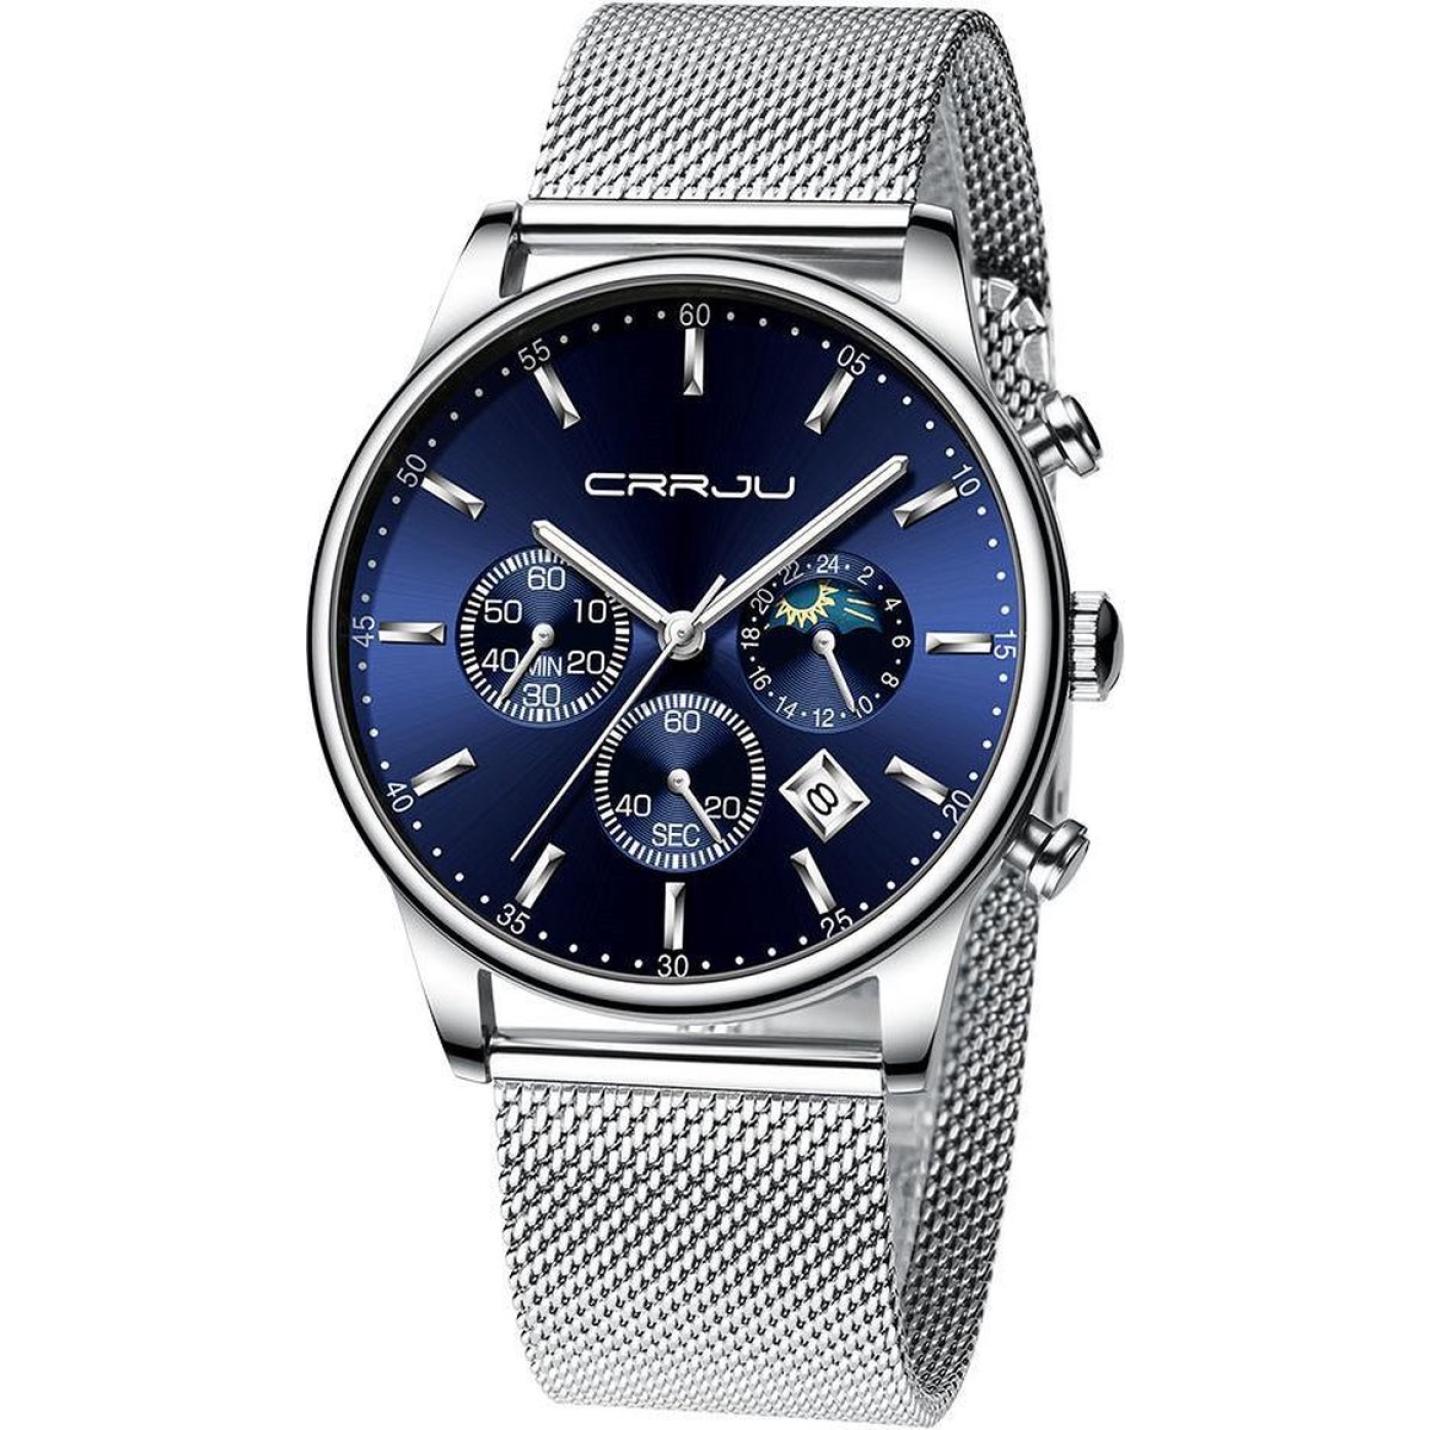 crrju-horloge-herenhorloge-zilverkleurig-blauw-staal-vooraanzicht